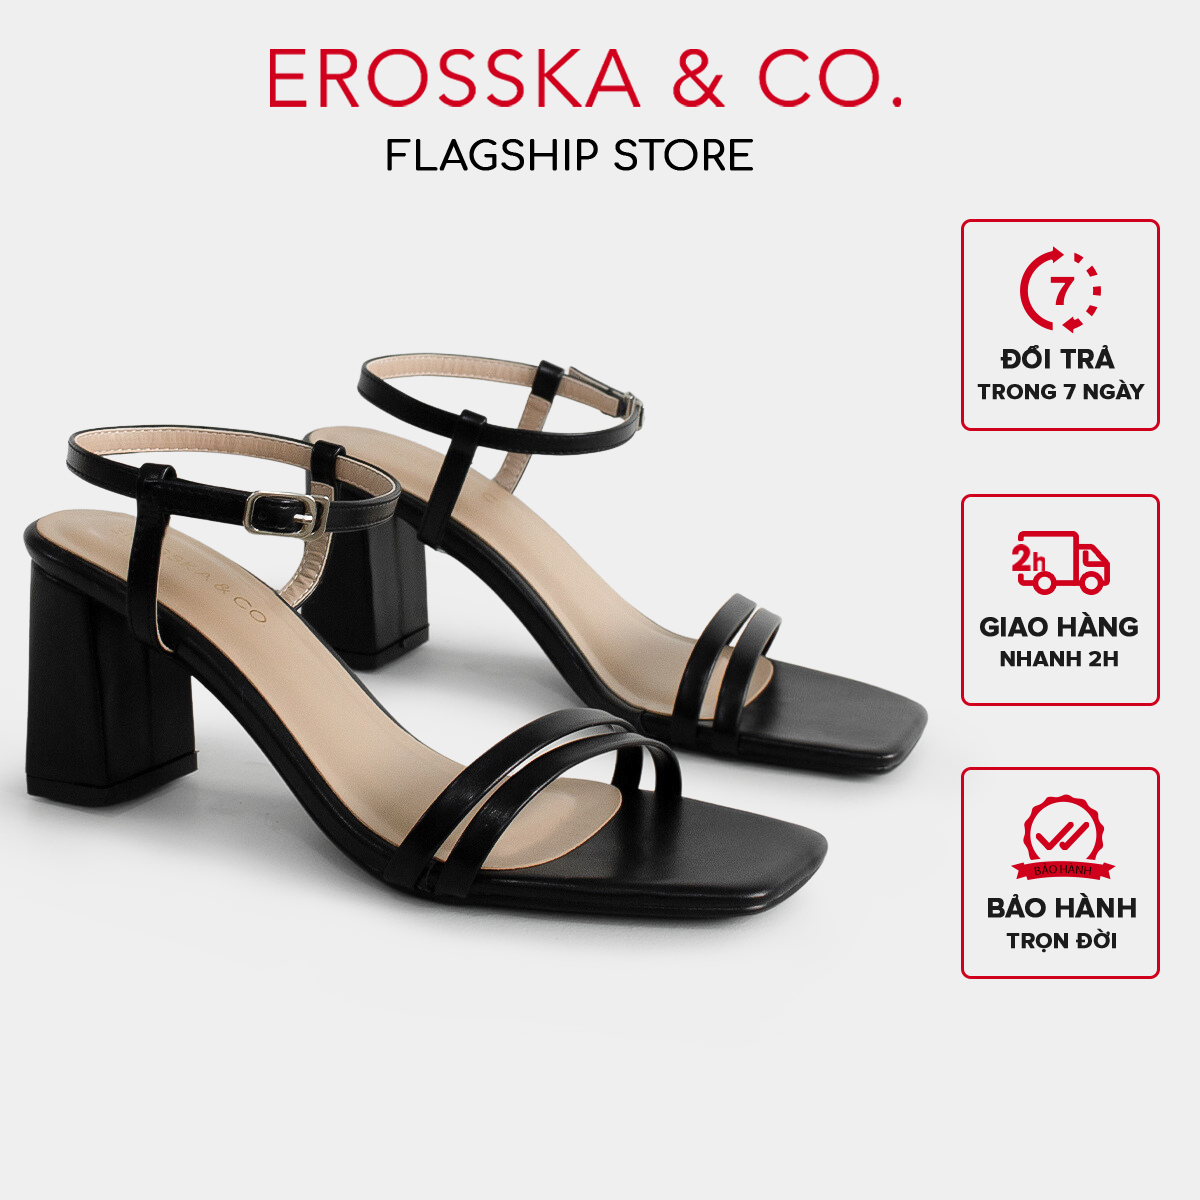 Erosska - Sandal cao gót mũi hở đế vuông phối dây quai mảnh cao 7cm màu